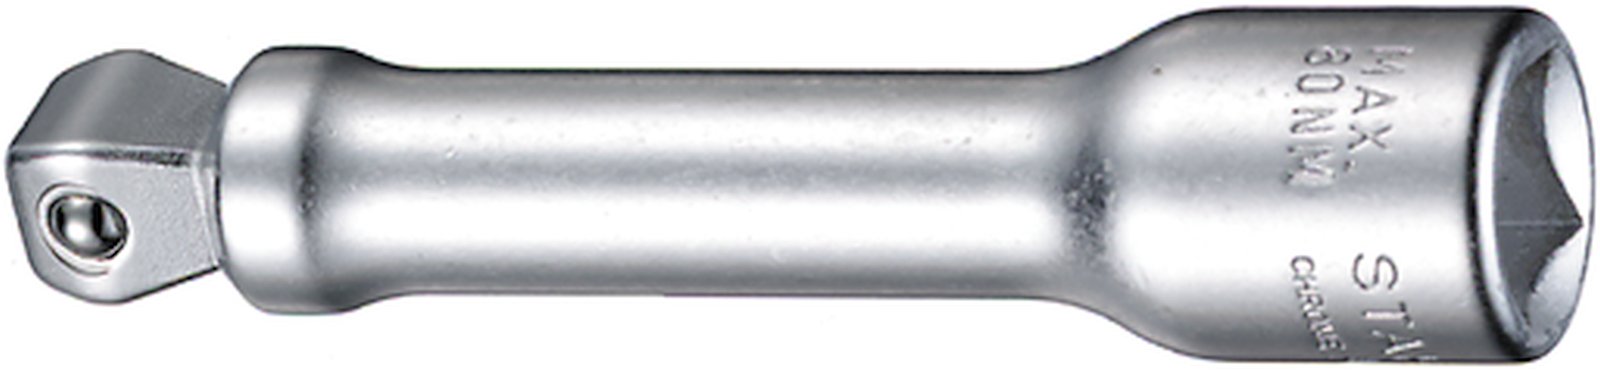 Przedłużka kątowa 3/8", 76 mm z przegubem wobble-drive STAHLWILLE